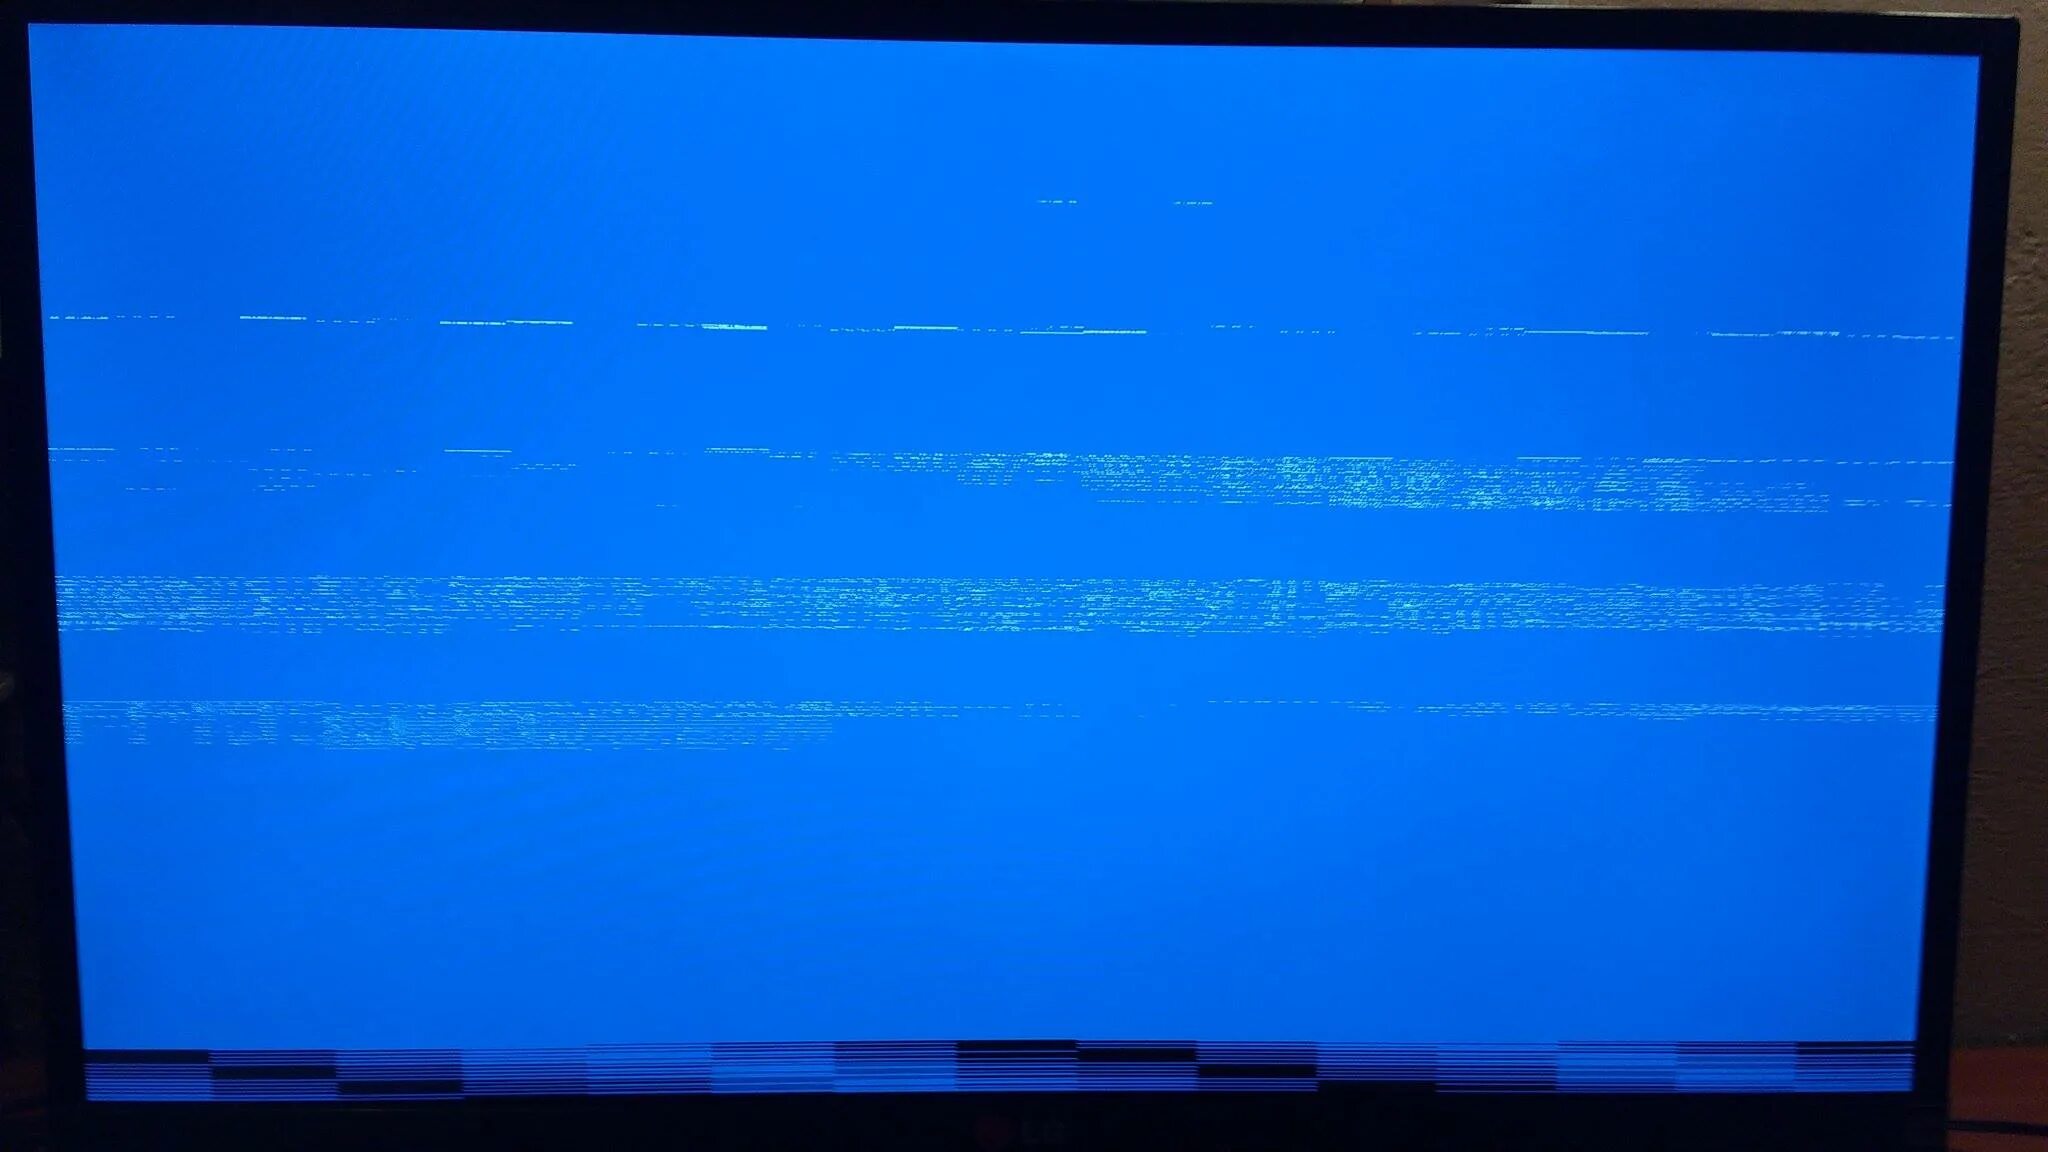 Артефакты видеокарты на виндовс 10. Артефакты на мониторе. Синий экран с полосками. Синие полосы на экране.